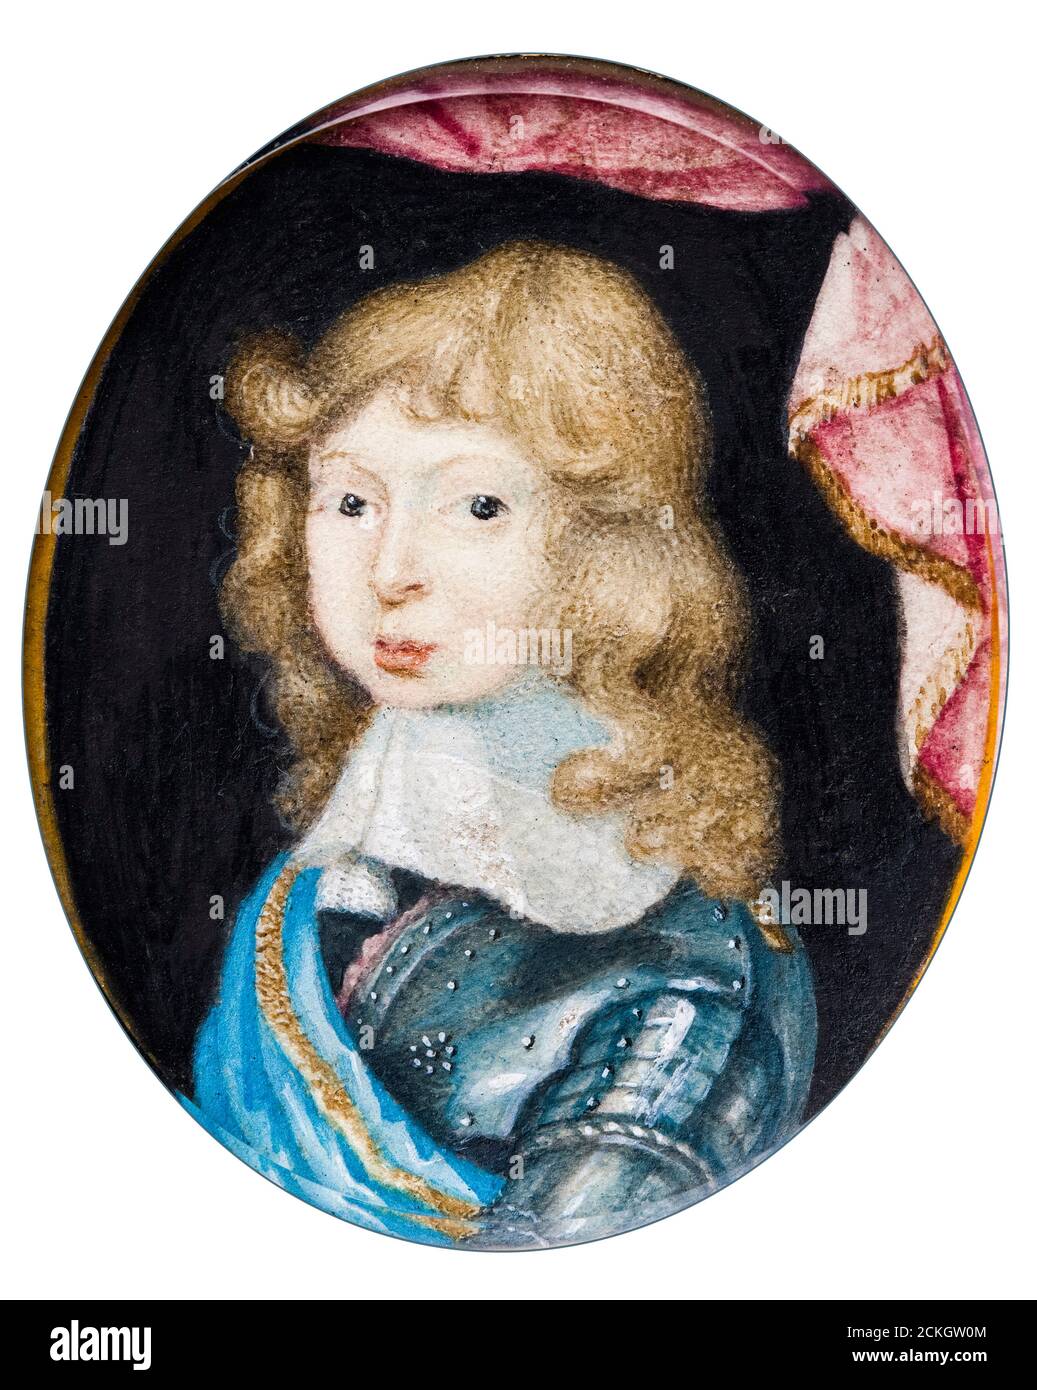 Charles XI (1655-1697), rey de Suecia, de niño, retrato en miniatura de Pierre Signac, alrededor de 1662 Foto de stock